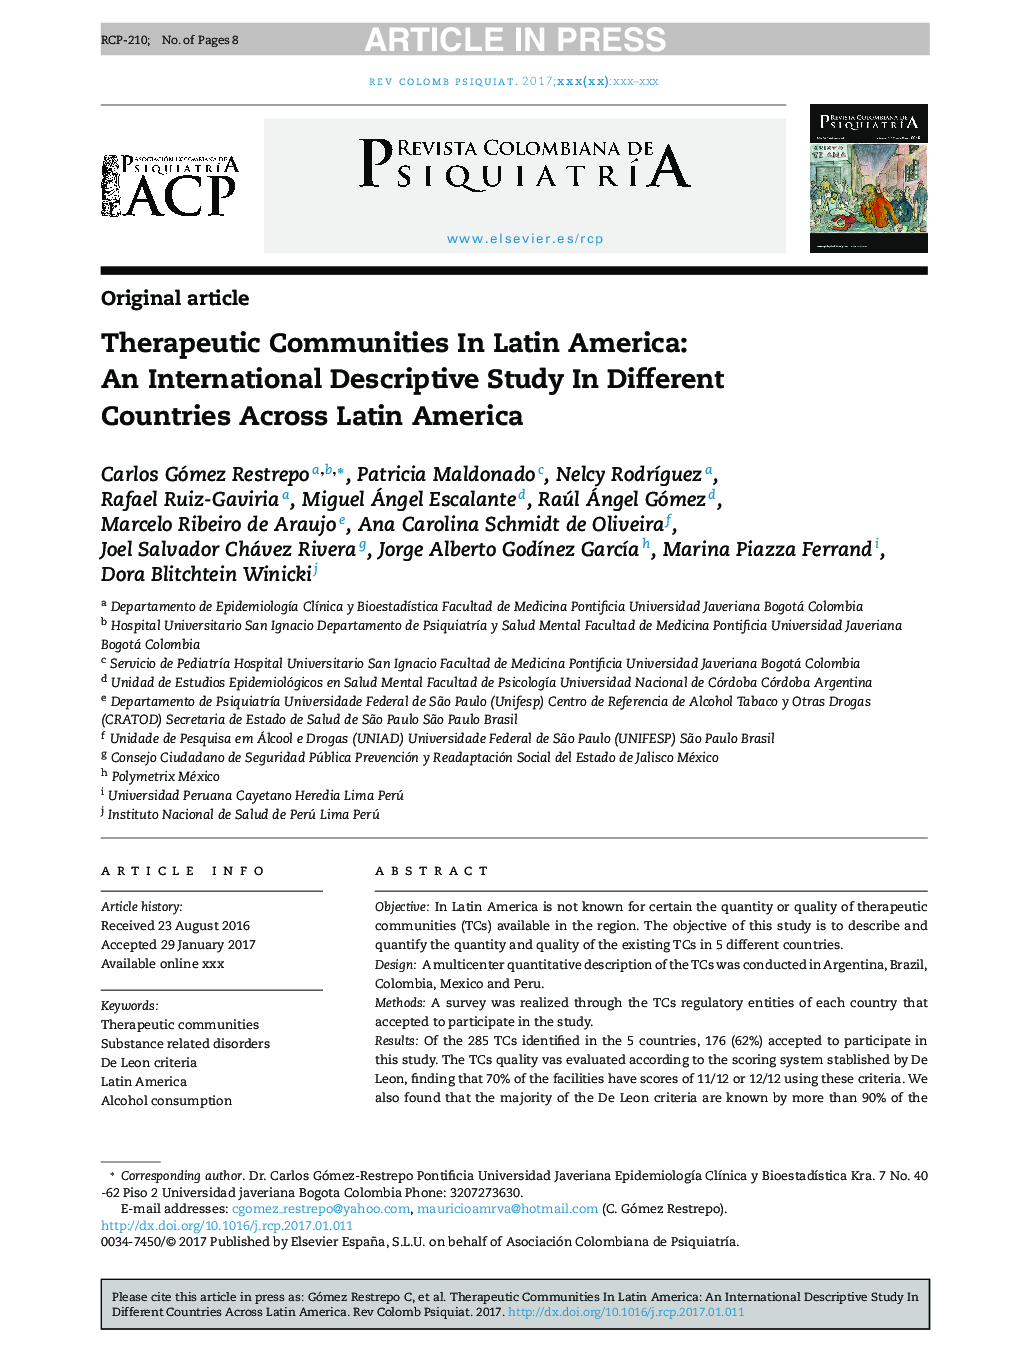 انجمن های درمانی در آمریکای لاتین: یک مطالعه توصیفی بین المللی در کشورهای مختلف در سراسر آمریکای لاتین 